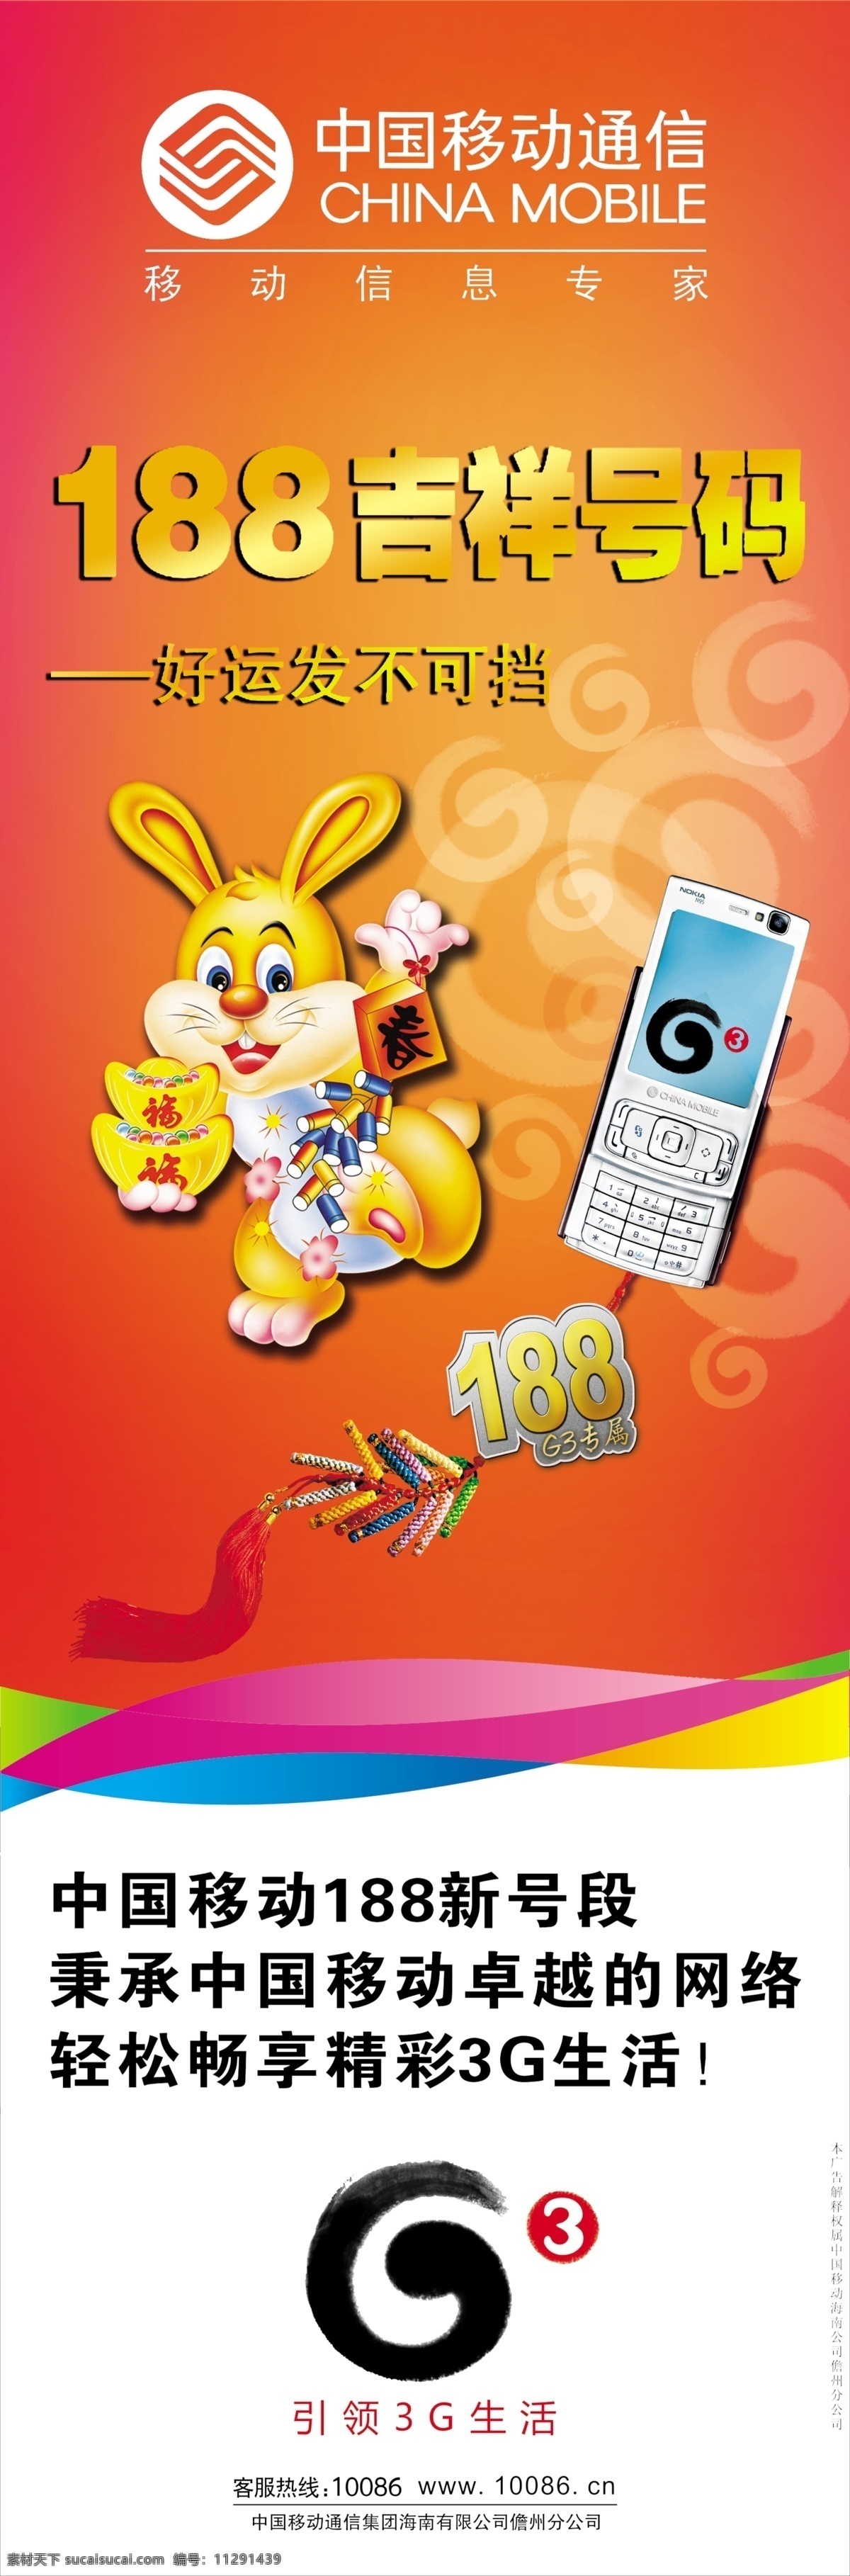 灯杆 旗 广告招牌 广告设计模板 金银 手机 兔子 移动标志 源文件 g3手机标志 其他海报设计